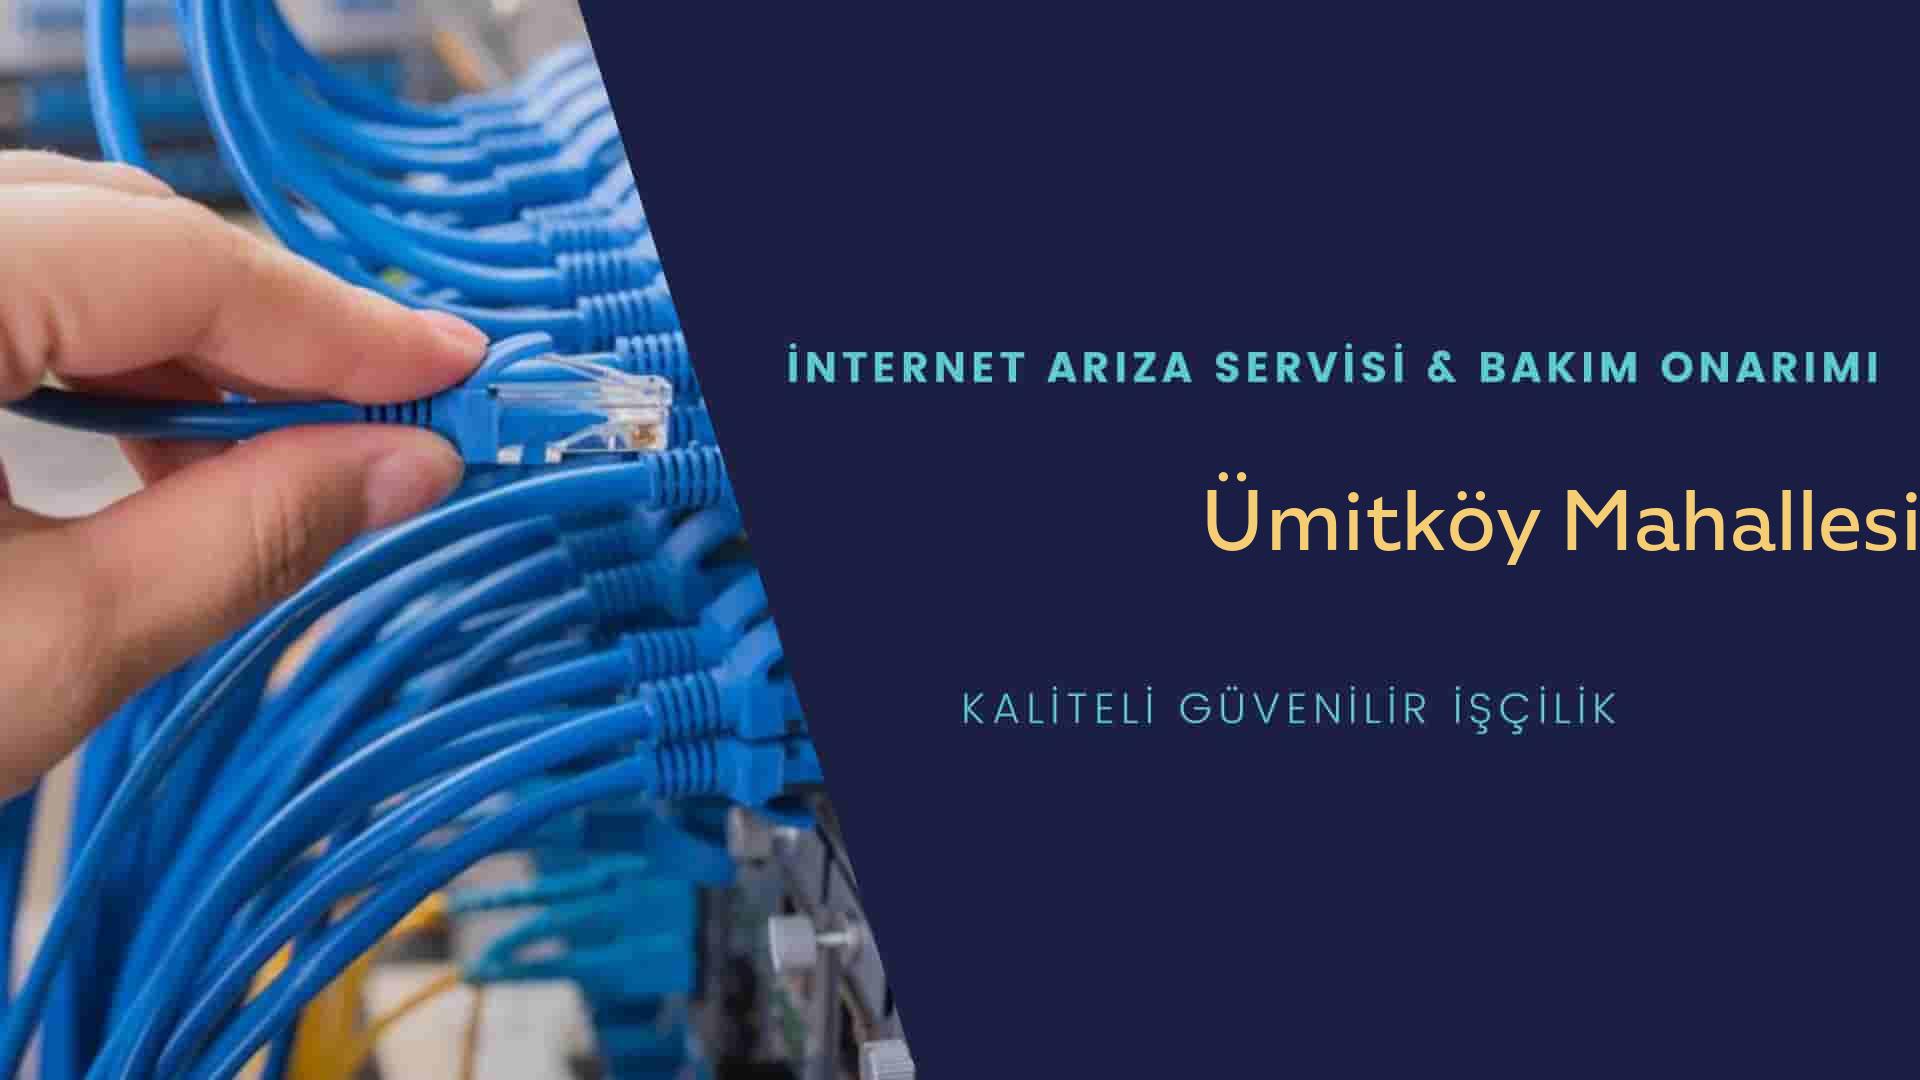 Ümitköy Mahallesi internet kablosu çekimi yapan yerler veya elektrikçiler mi? arıyorsunuz doğru yerdesiniz o zaman sizlere 7/24 yardımcı olacak profesyonel ustalarımız bir telefon kadar yakındır size.